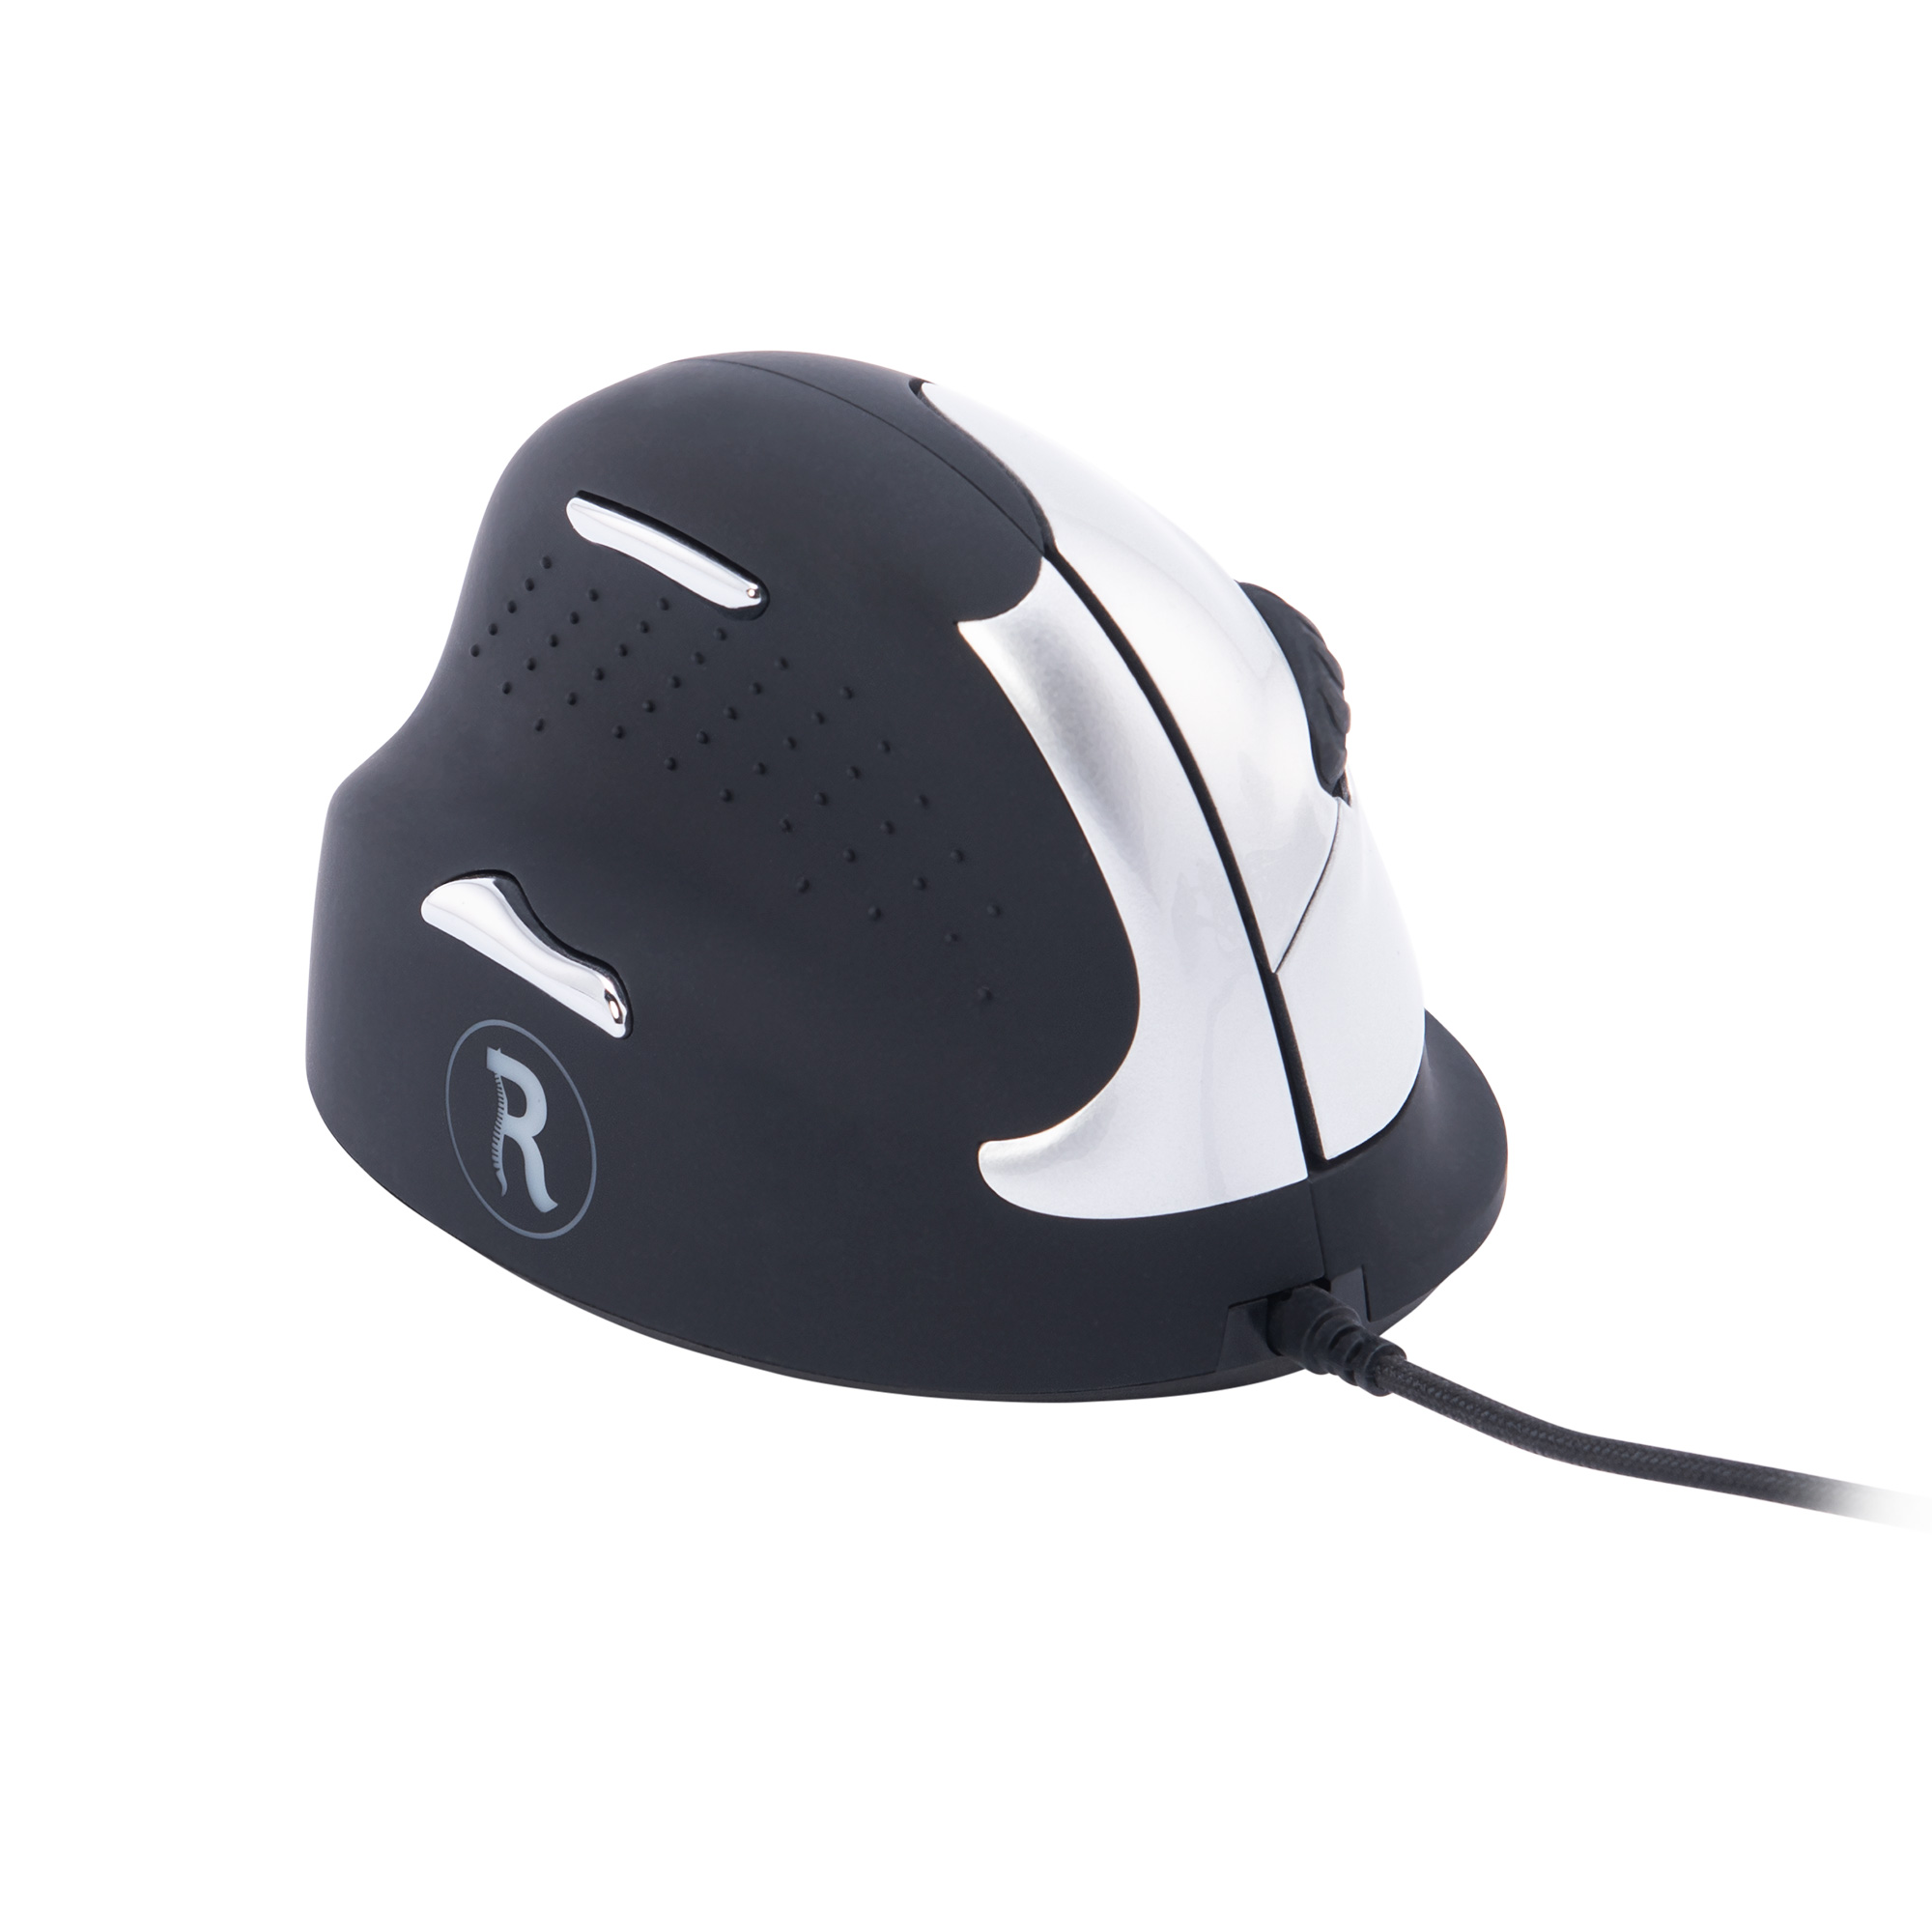 R-GO HE Break Mouse Ergonomische Maus, Handlänge Linkshänder, Schwarz Mittel, kabelgebunden Maus